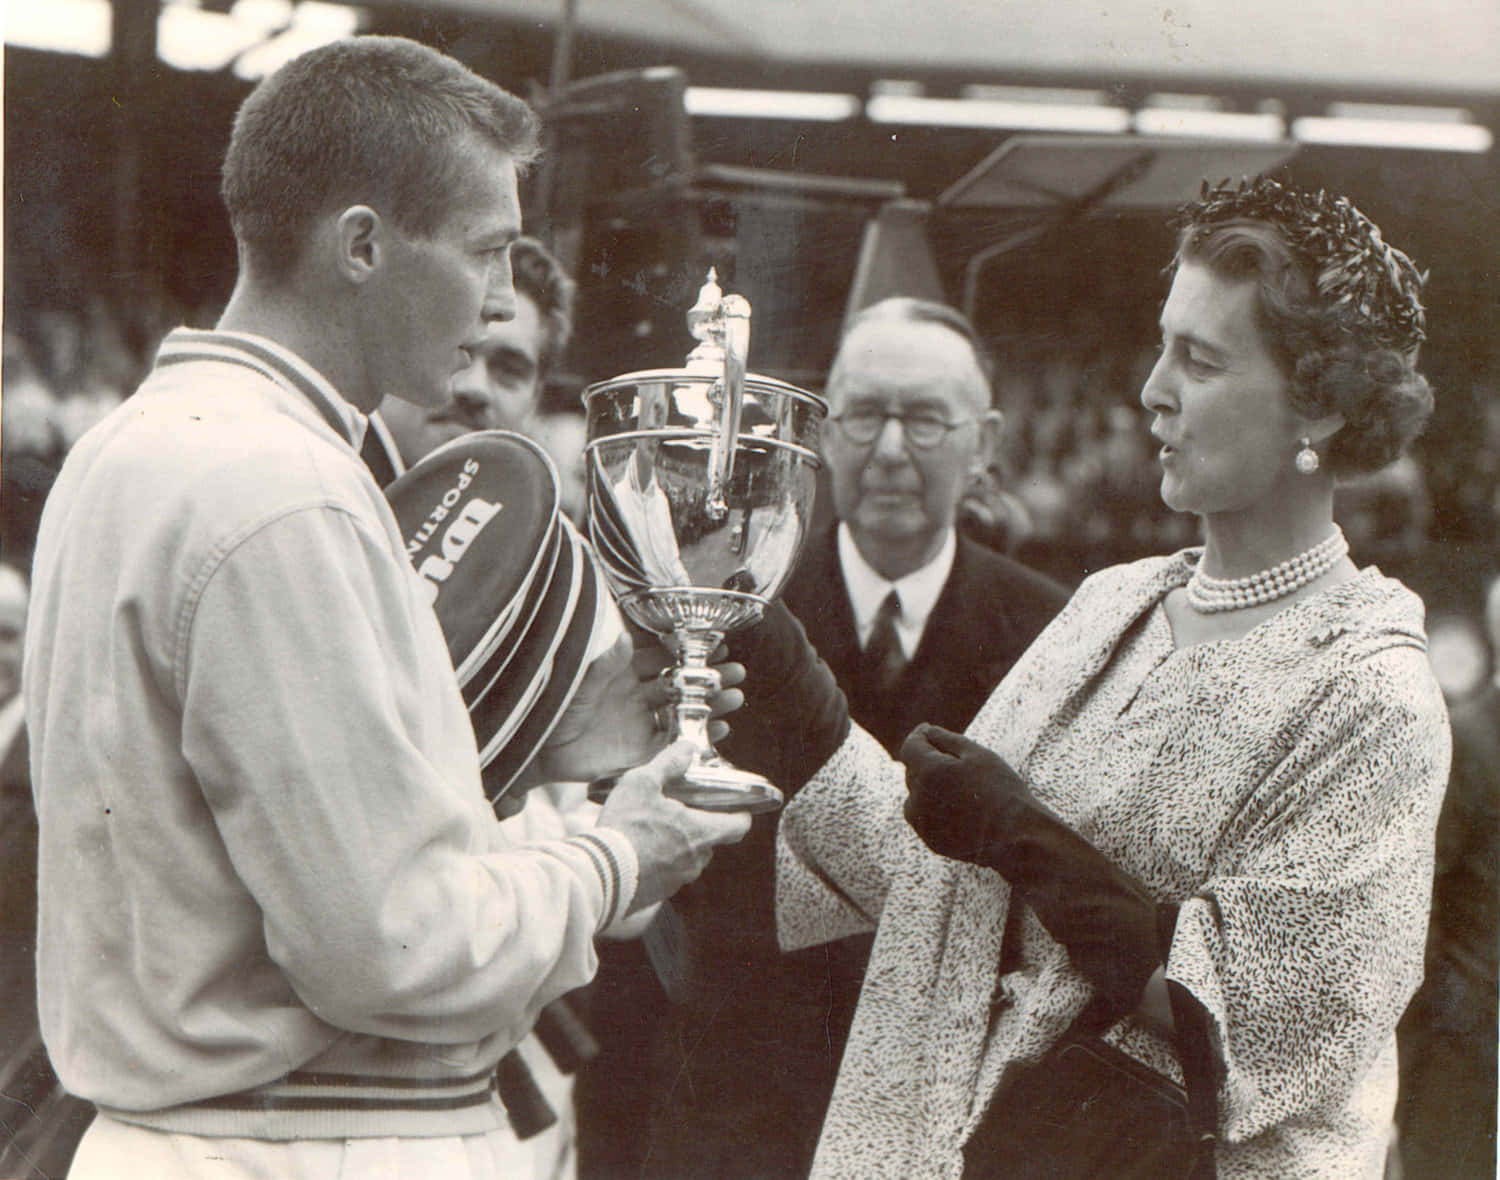 Tony Trabert 1955 Wimbledon Champion Picture